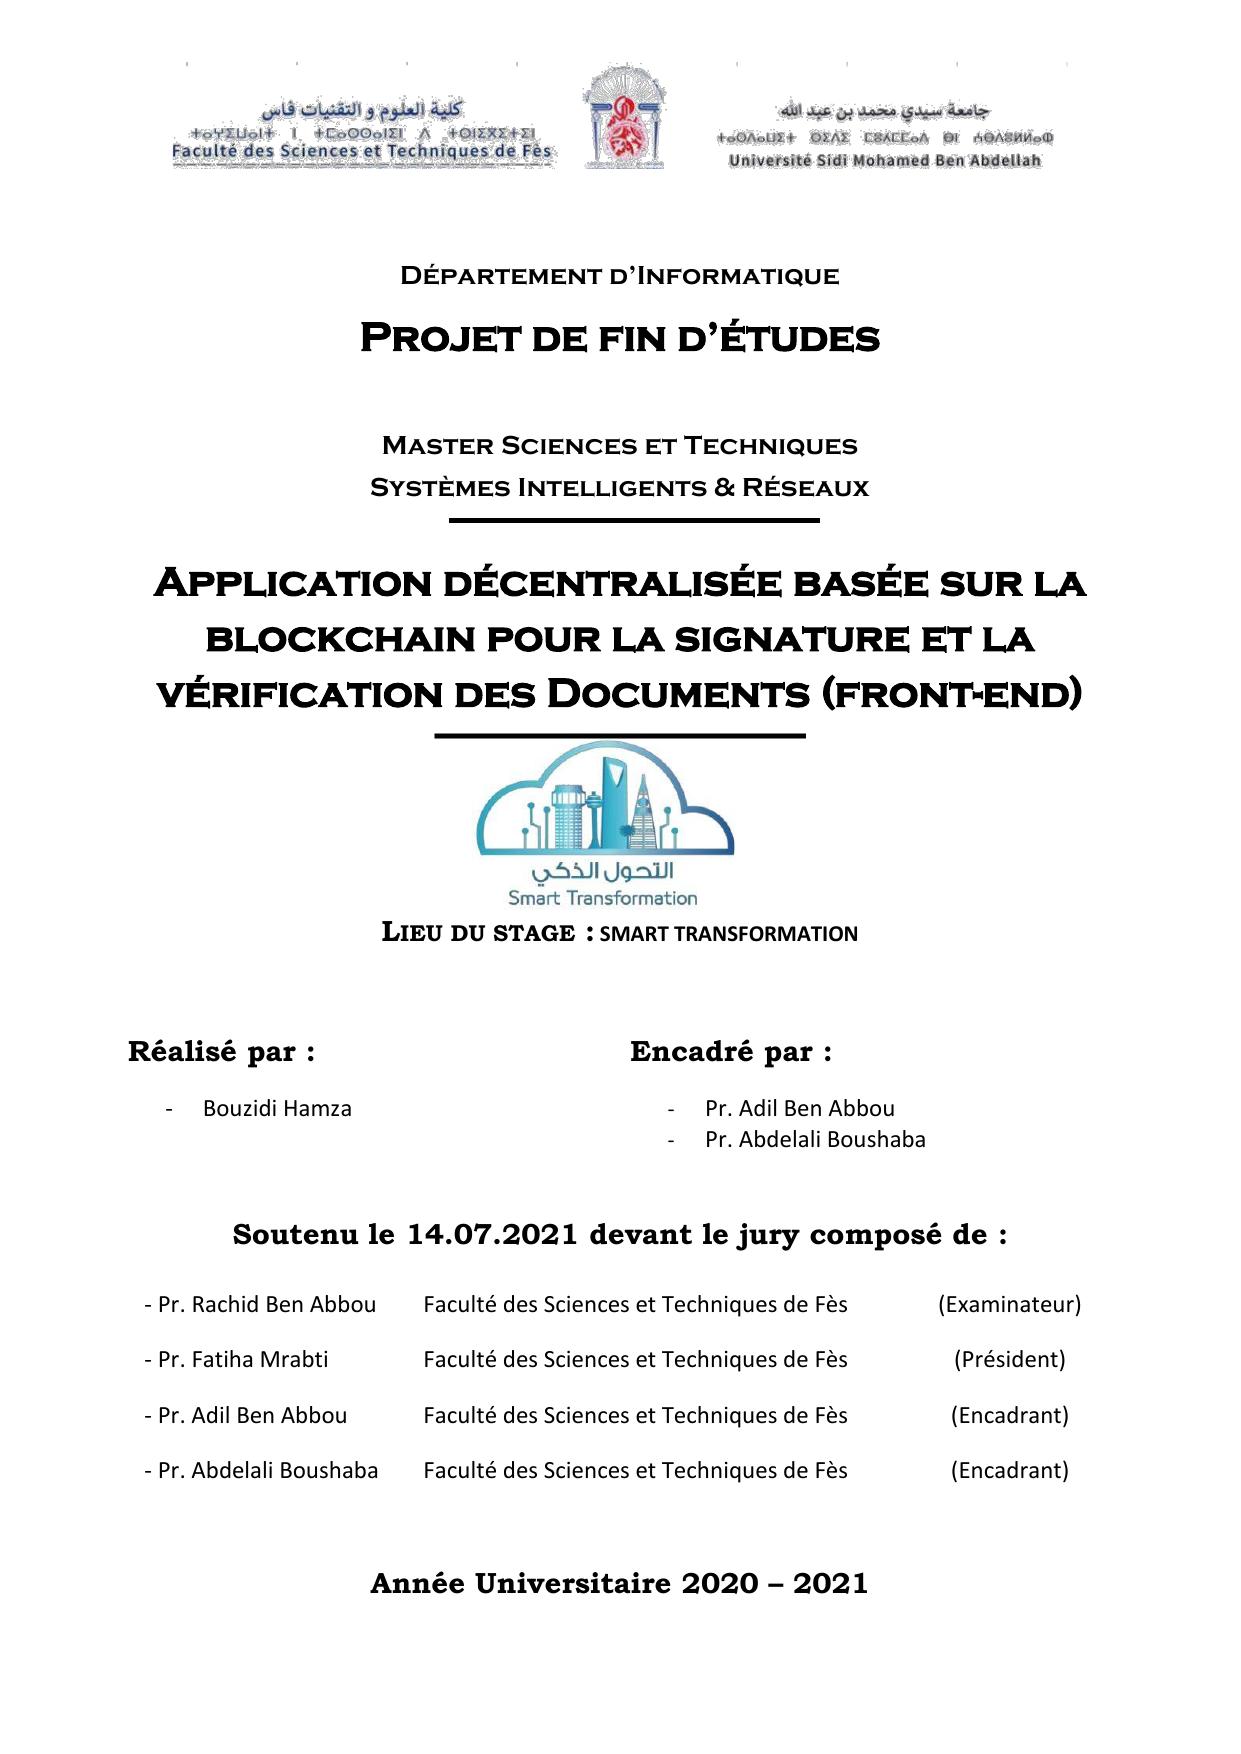 Application décentralisée basée sur la blockchain pour la signature et la vérification des Documents (front-end)